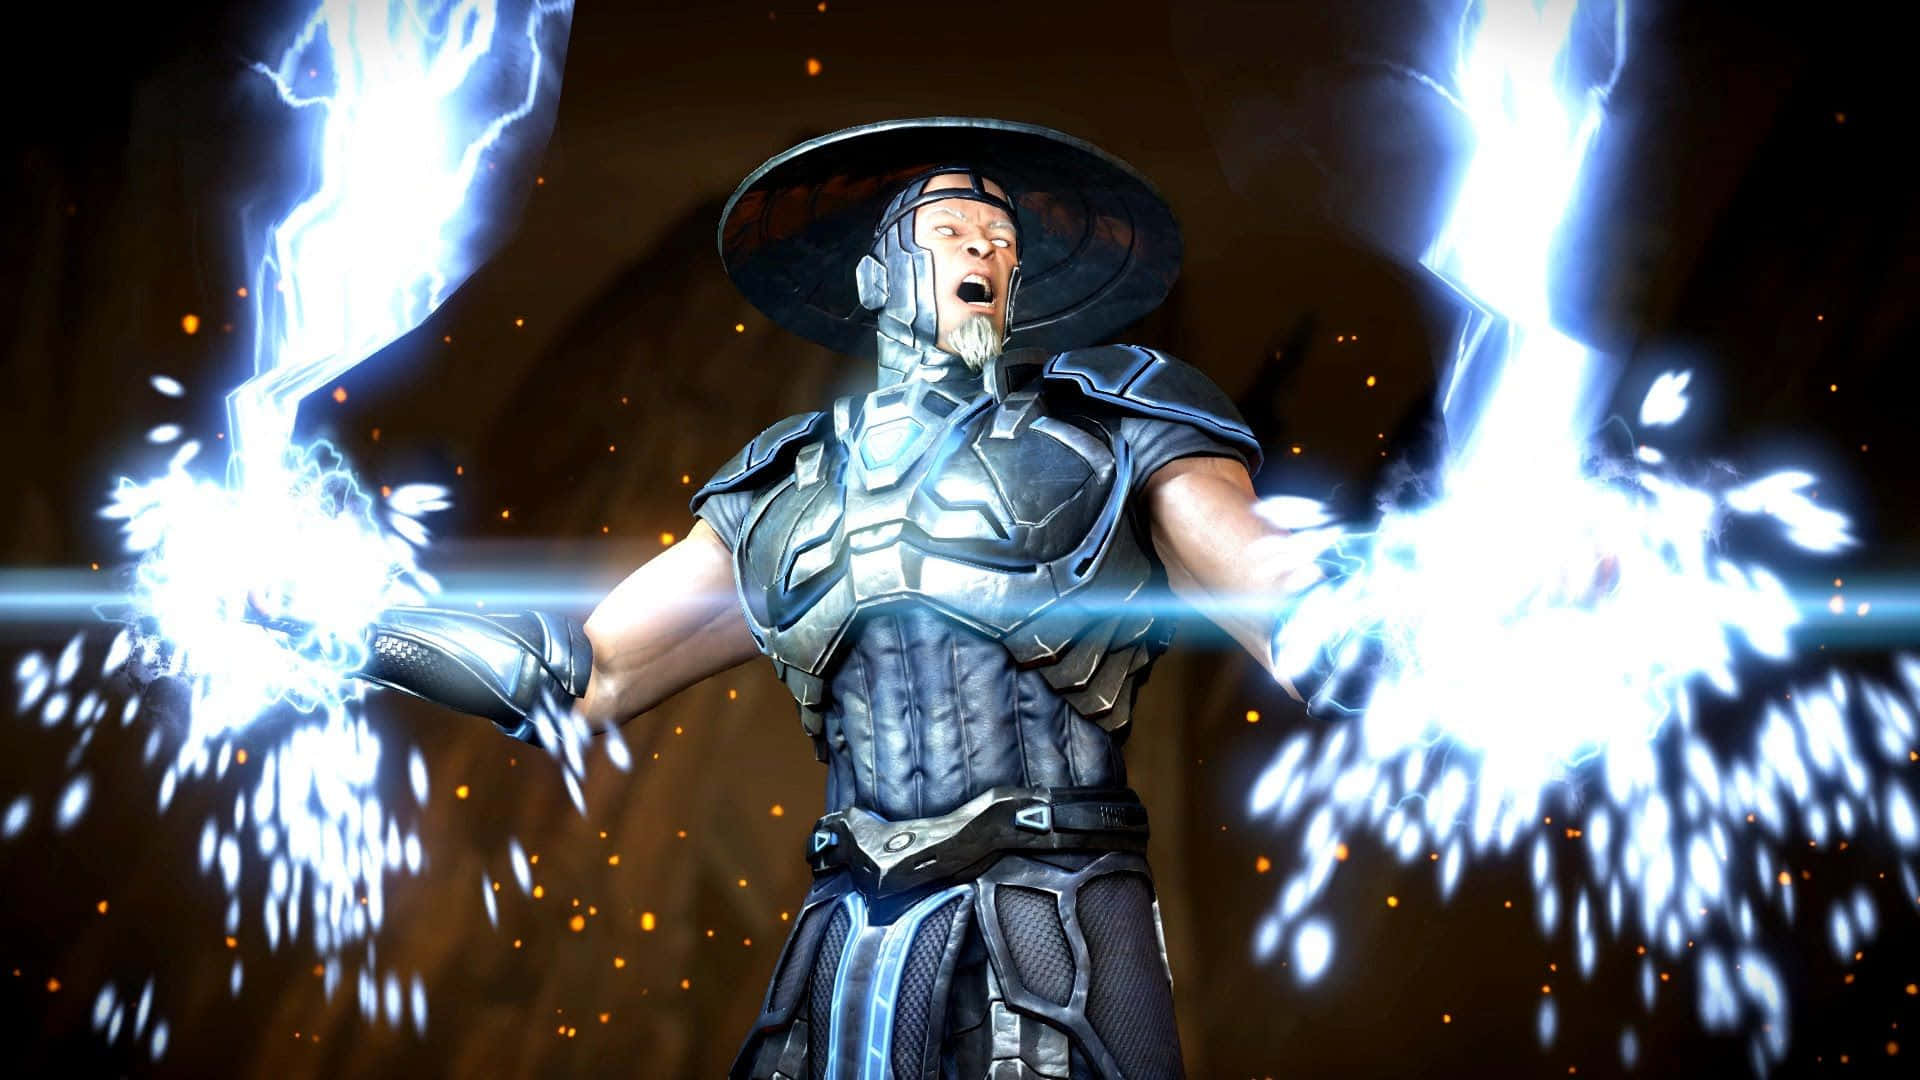 Electrifying Raiden in Mortal Kombat Wallpaper